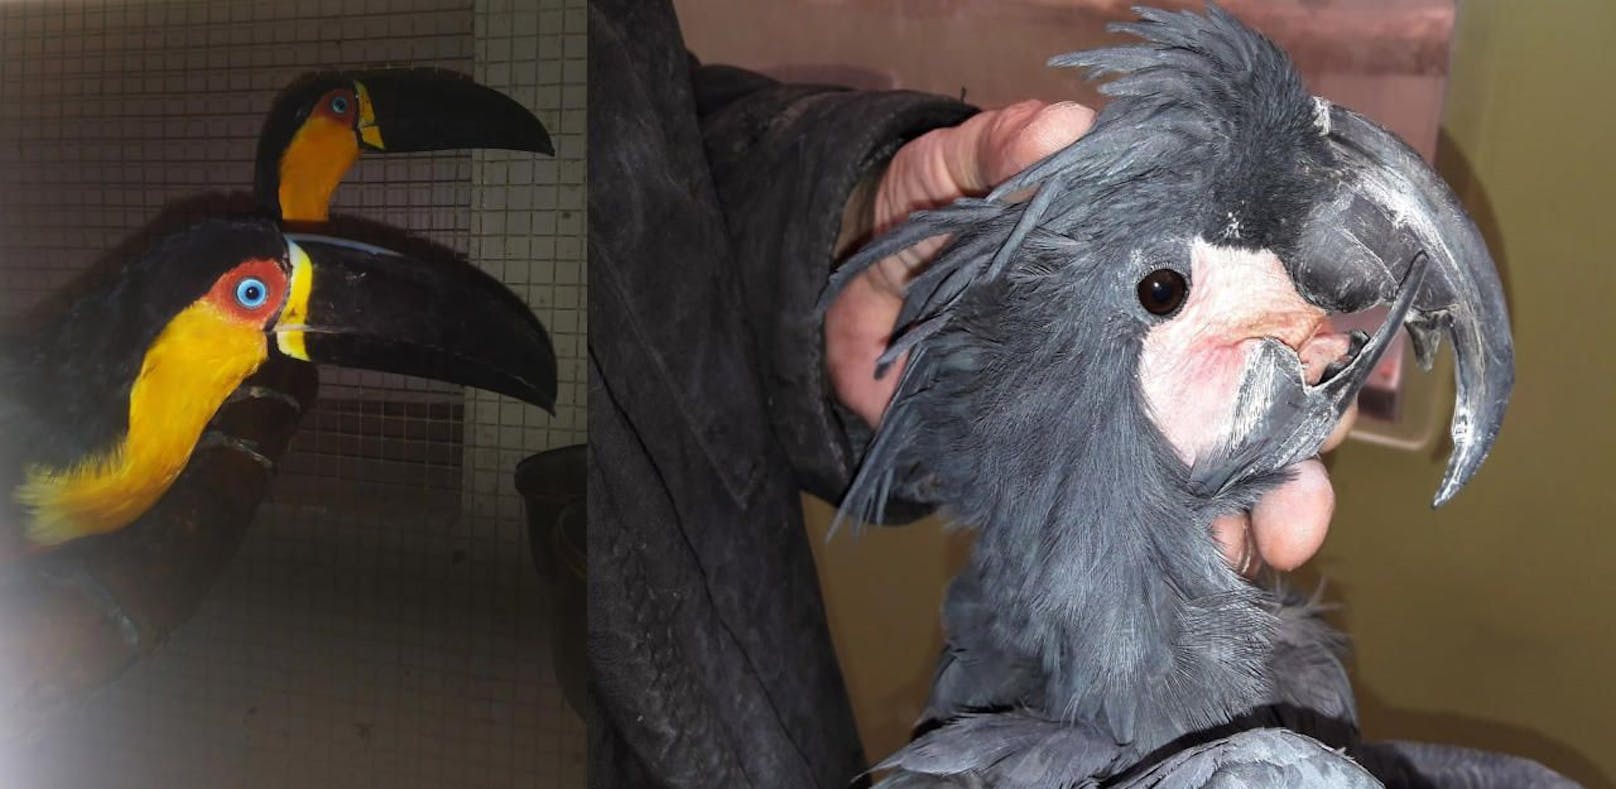 Seltene Vögel von Tierpark bei Züchter gestohlen